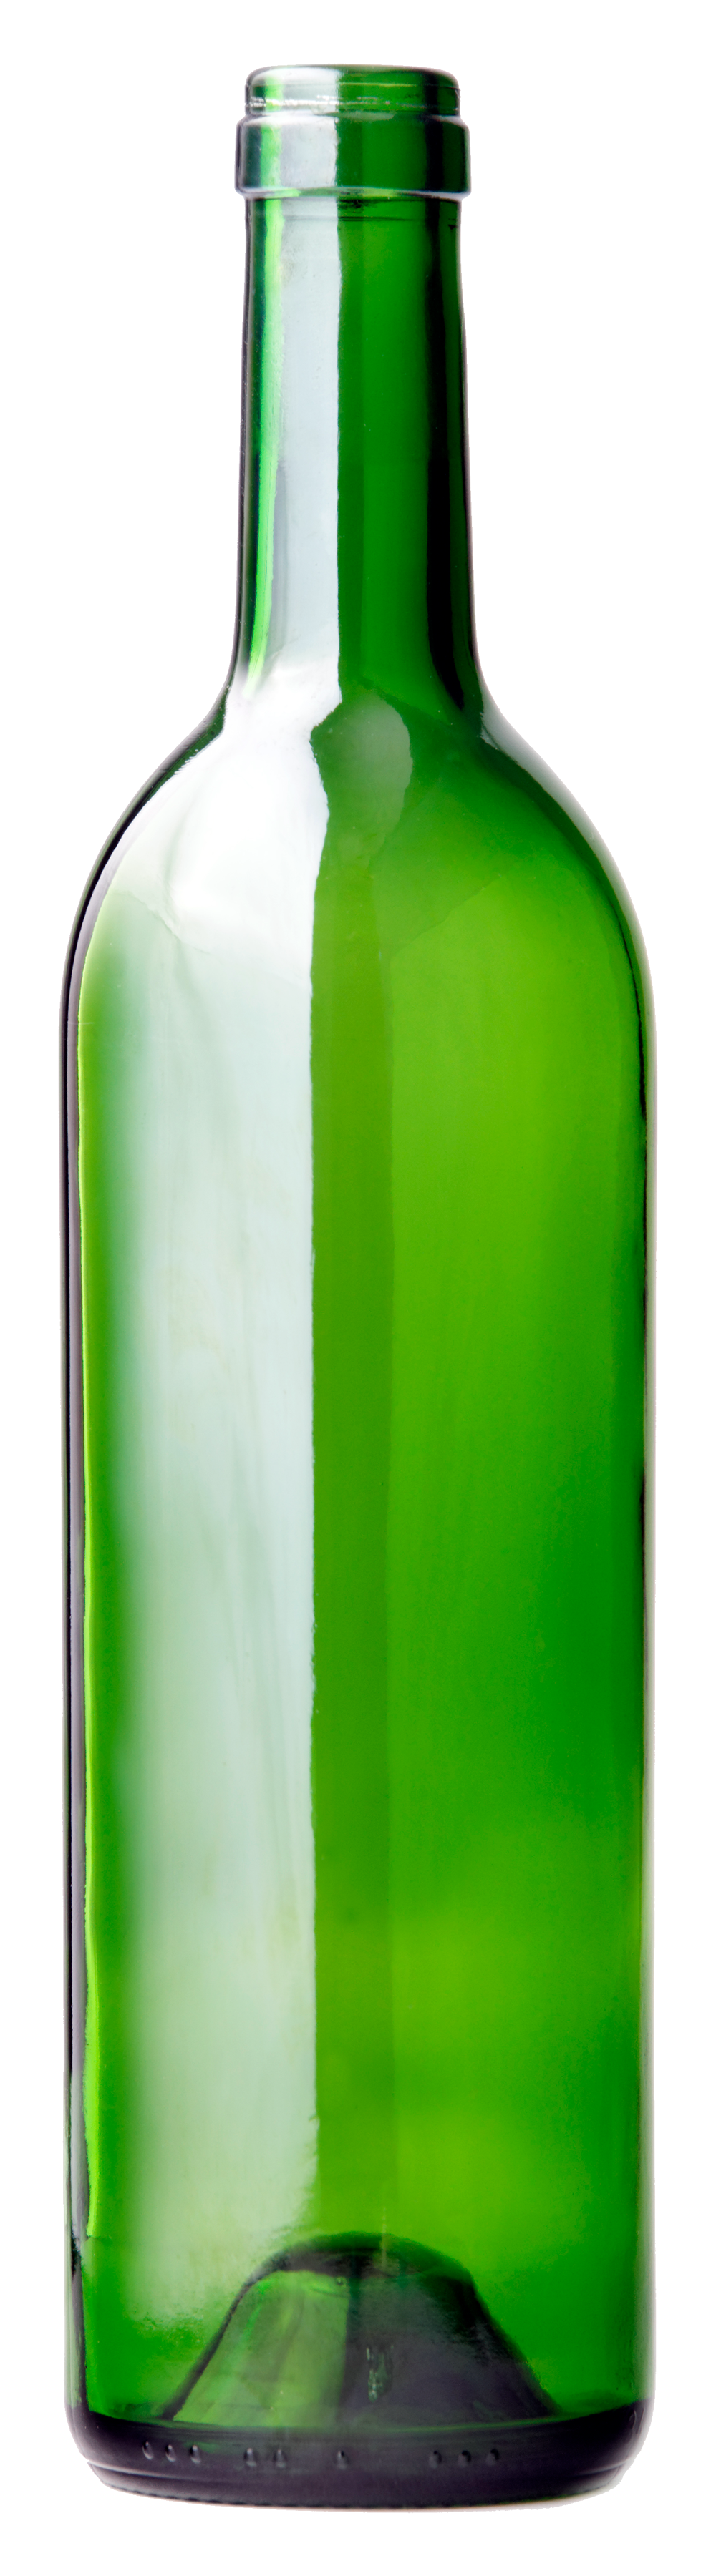 Botol kaca hijau PNG Transparan